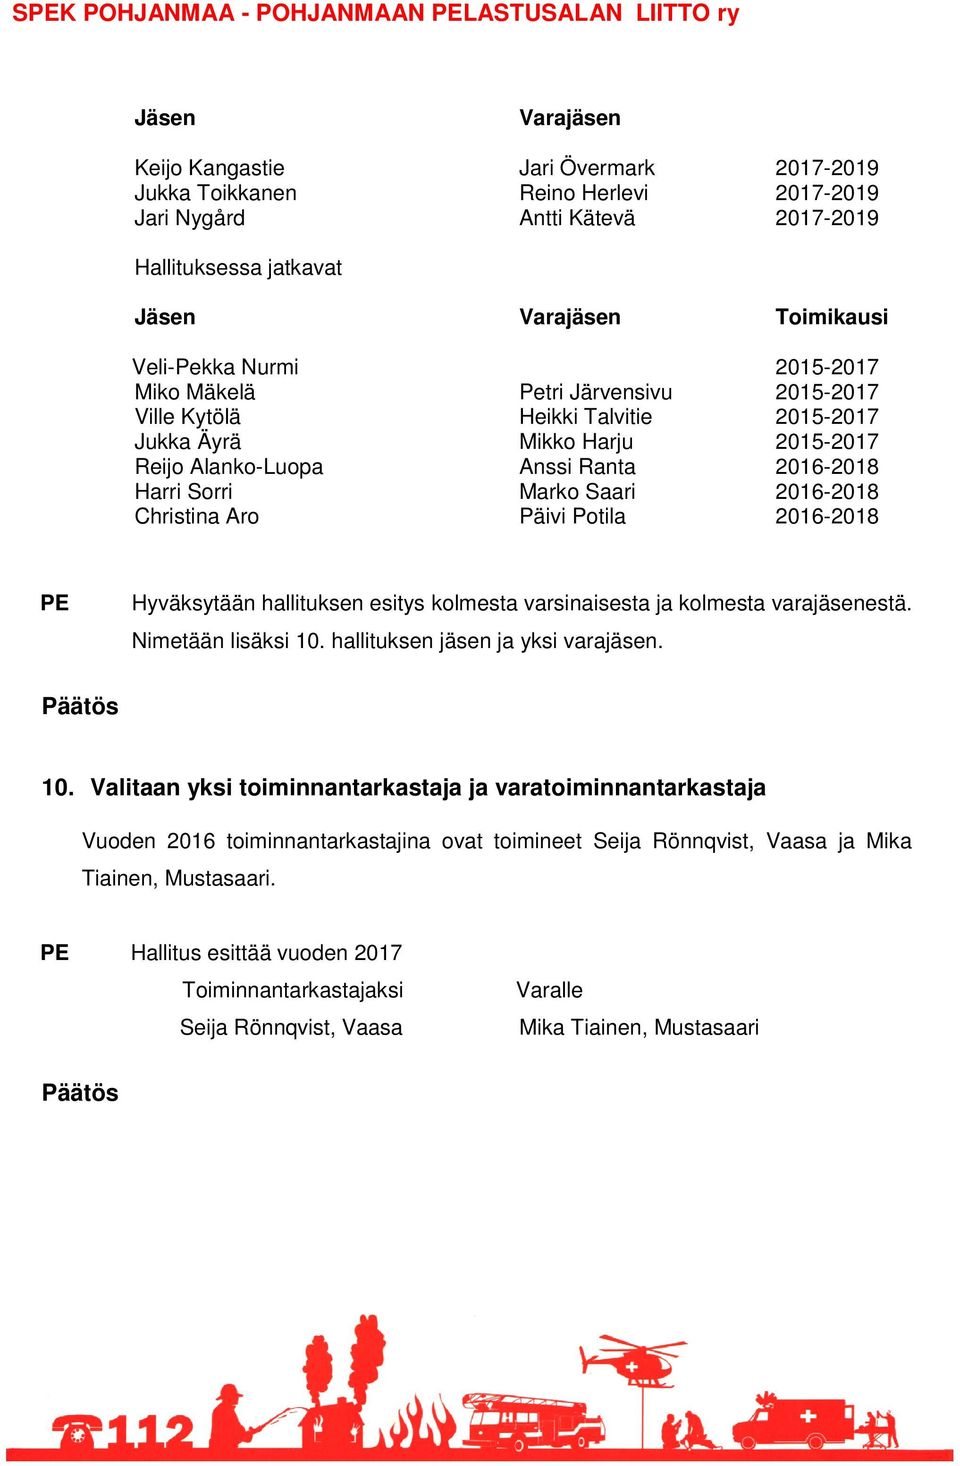 Ranta 2016-2018 Harri Sorri Marko Saari 2016-2018 Christina Aro Päivi Potila 2016-2018 Hyväksytään hallituksen esitys kolmesta varsinaisesta ja kolmesta varajäsenestä. Nimetään lisäksi 10.